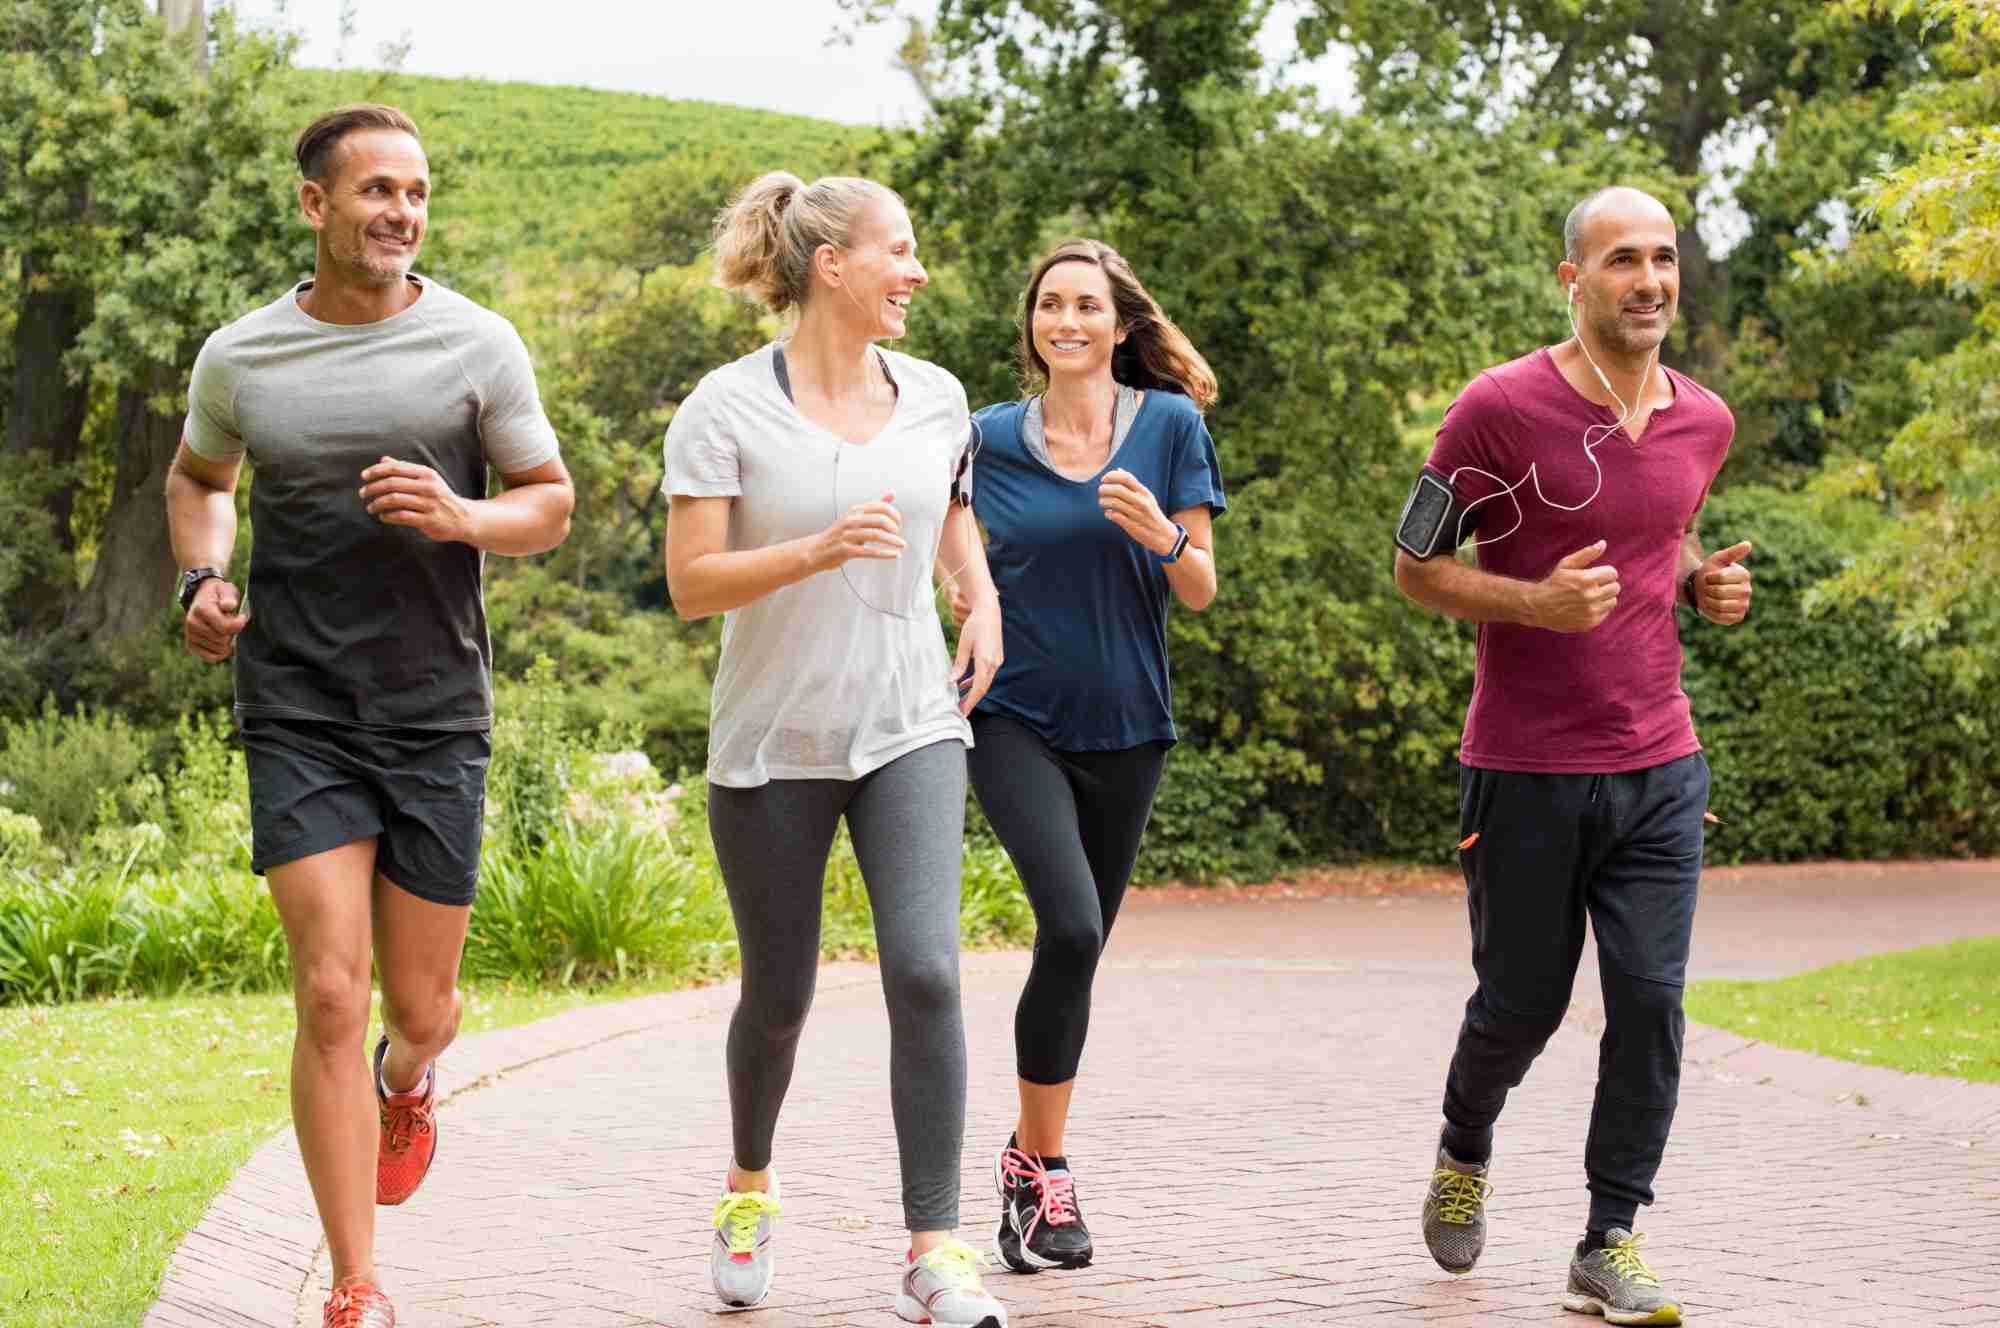 Jogging Tipps für Anfänger: 10 Regeln für den Einstieg